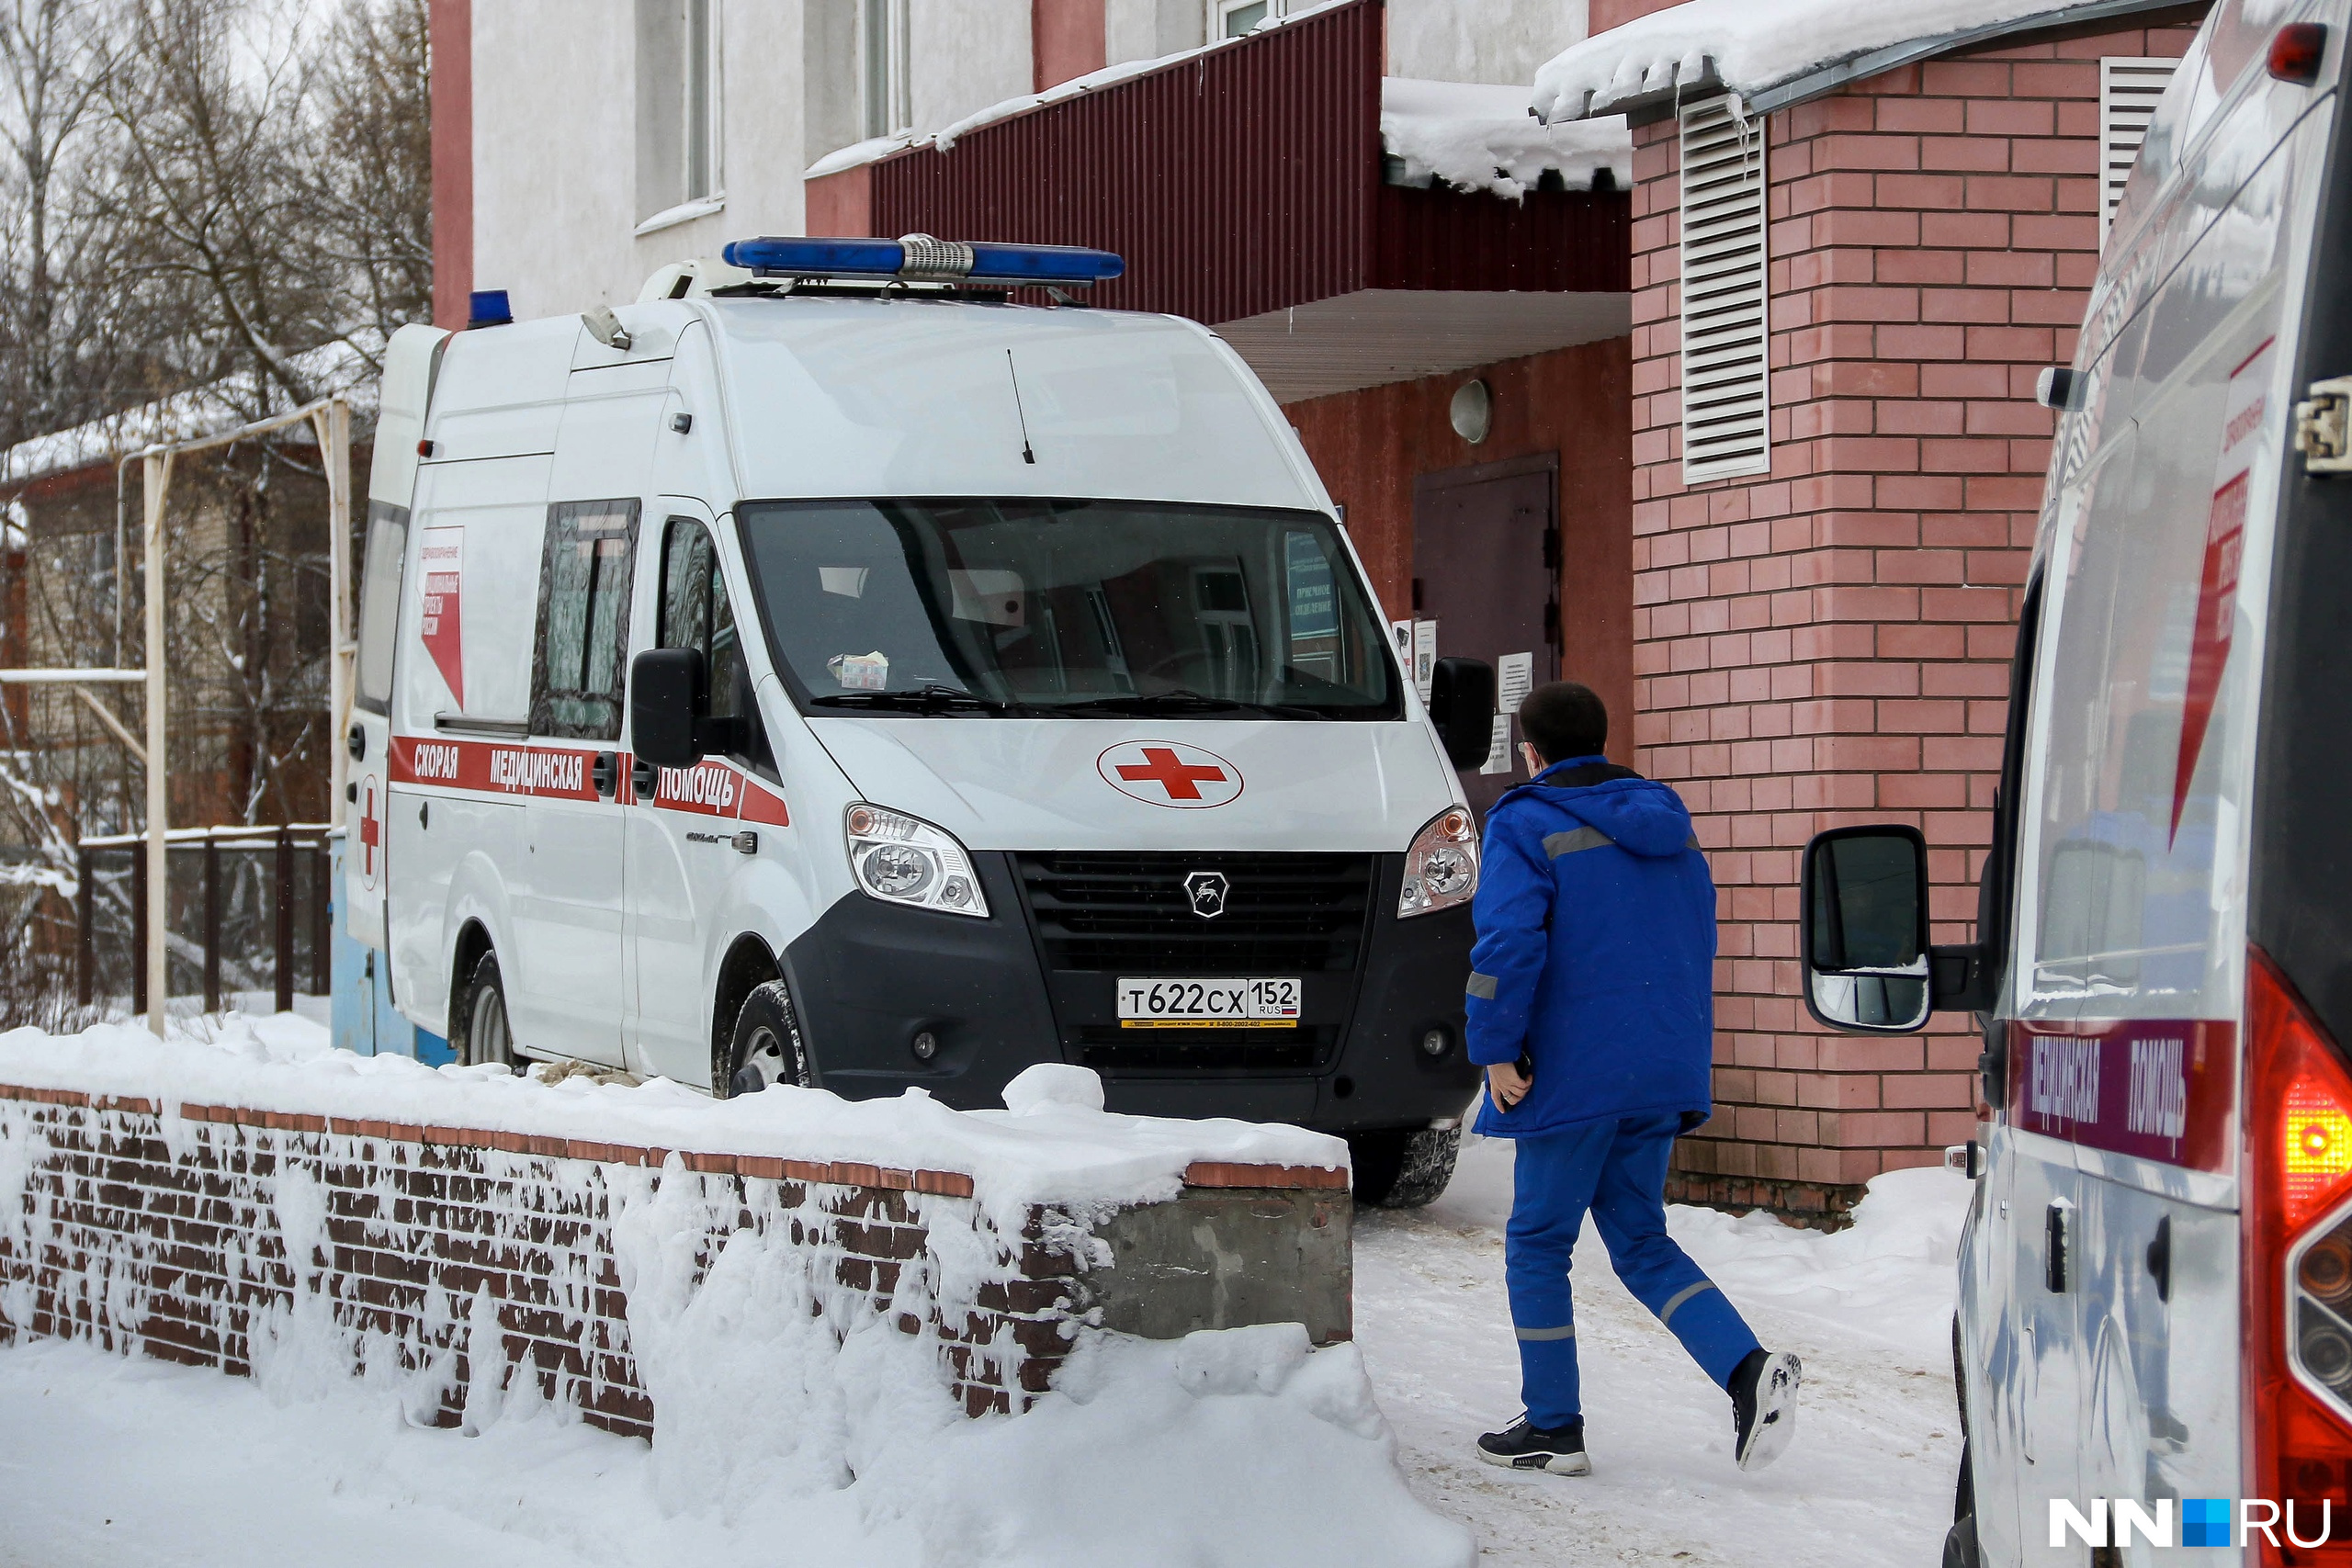 Взрыв газа произошел в центре Нижнего Новгорода. Есть пострадавшие